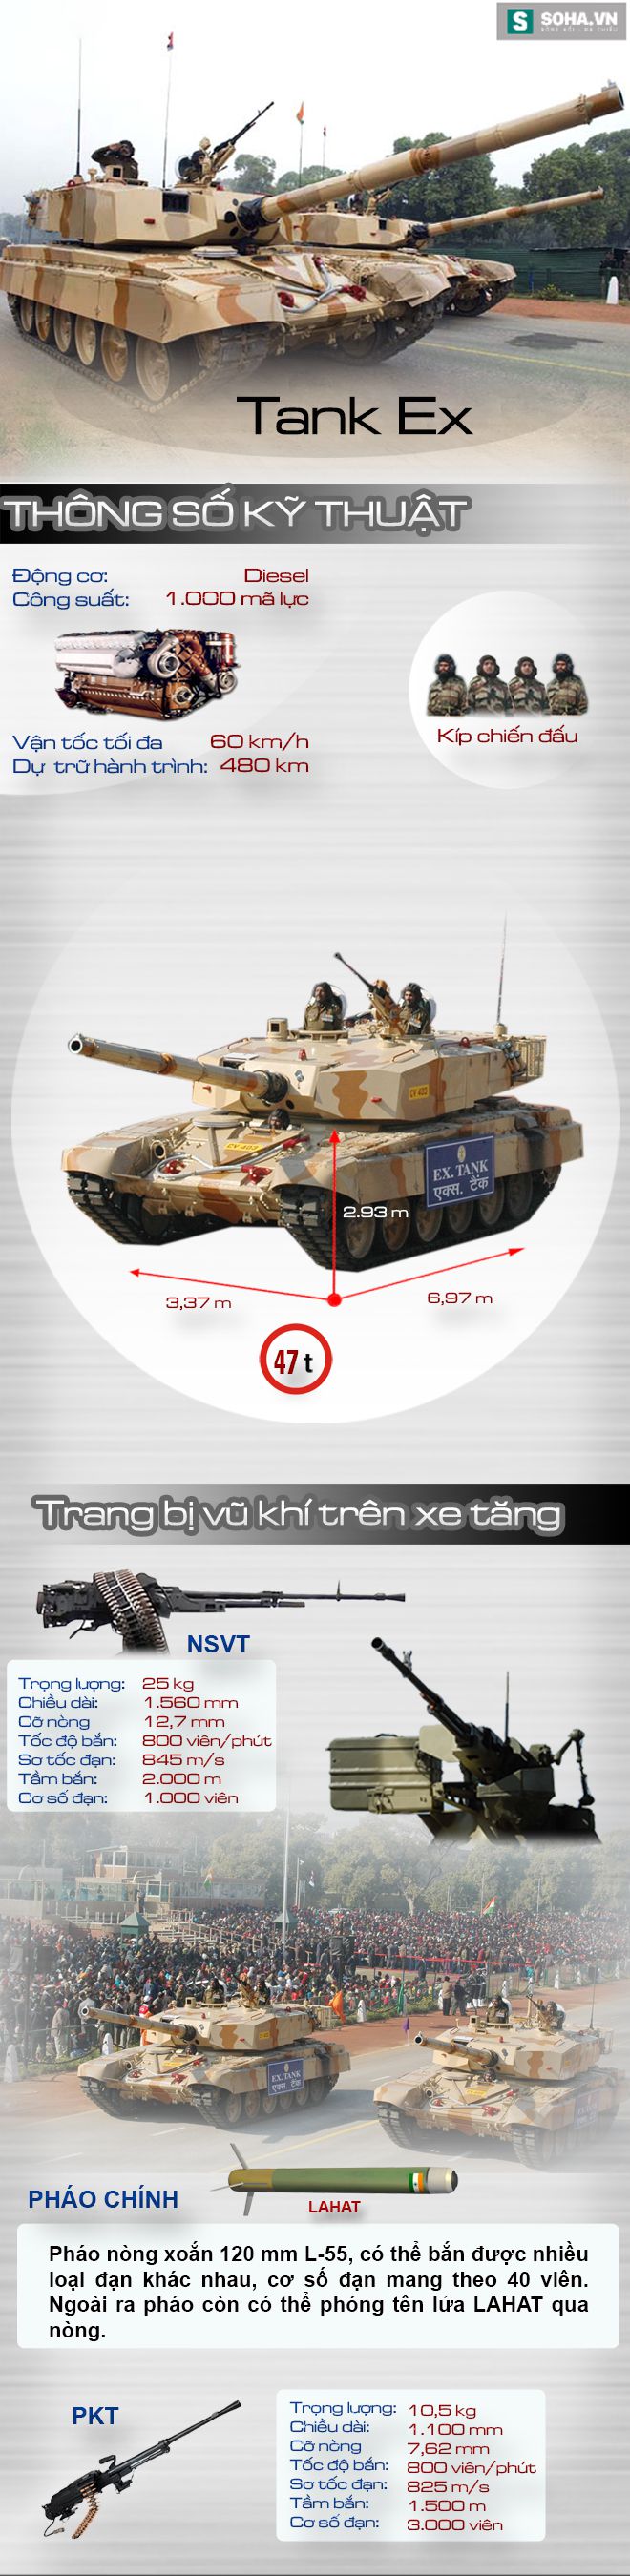 Thân T-72 nhưng lại gắn tháp pháo Arjun, đây là loại xe tăng nào của Ấn Độ? - Ảnh 1.